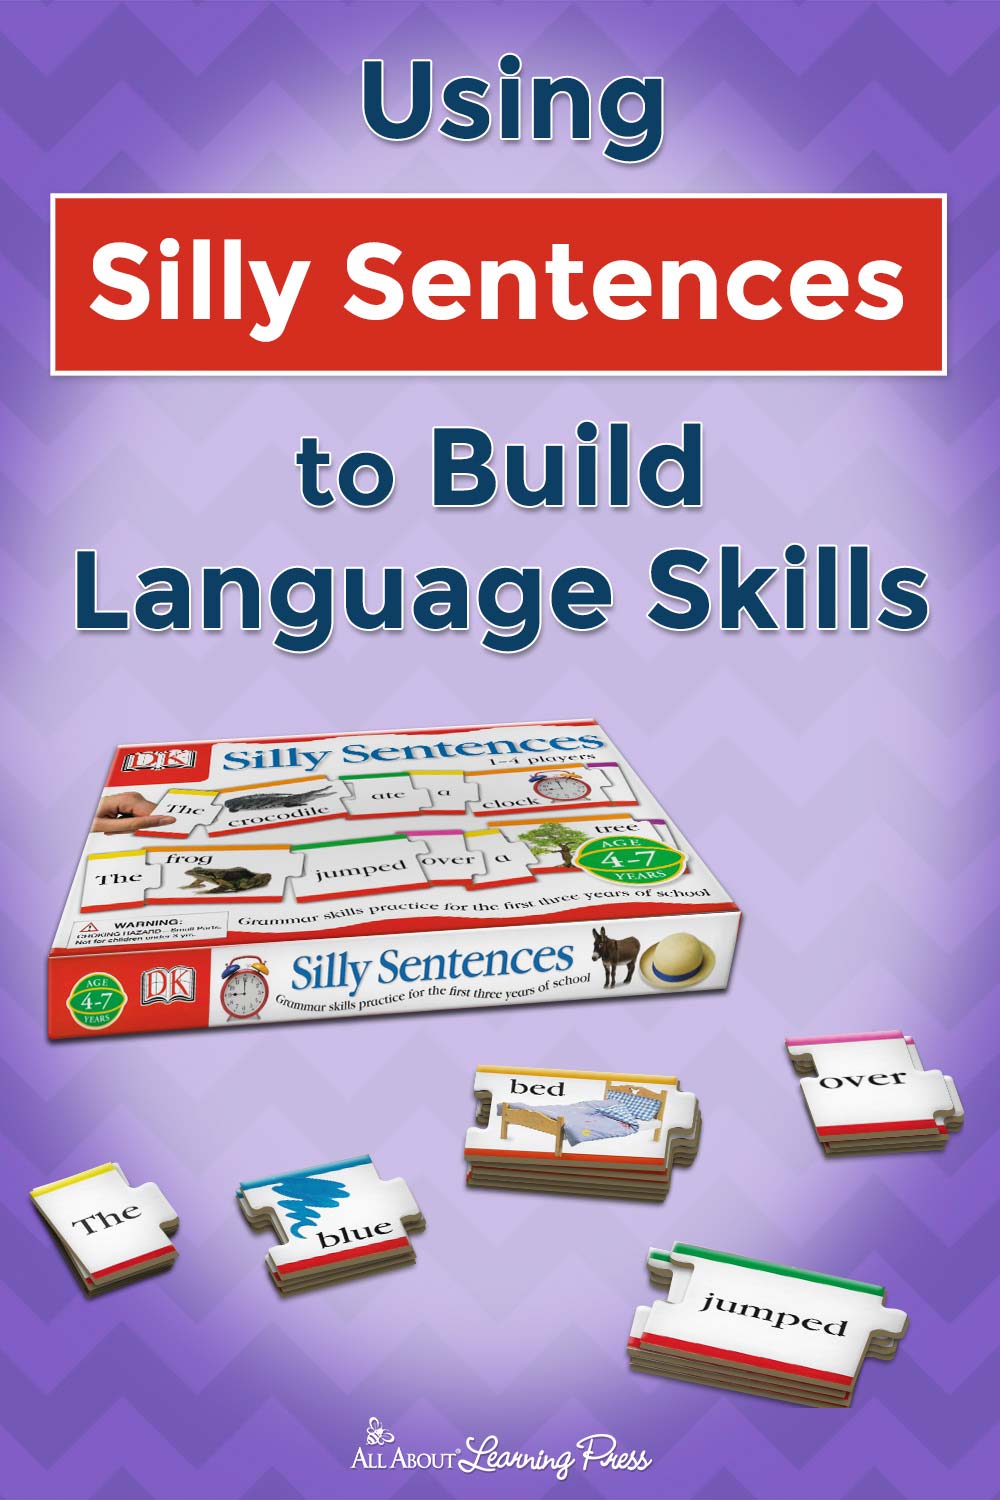 Using Silly Sentences to Build Language Skills + Printable Game Sheet